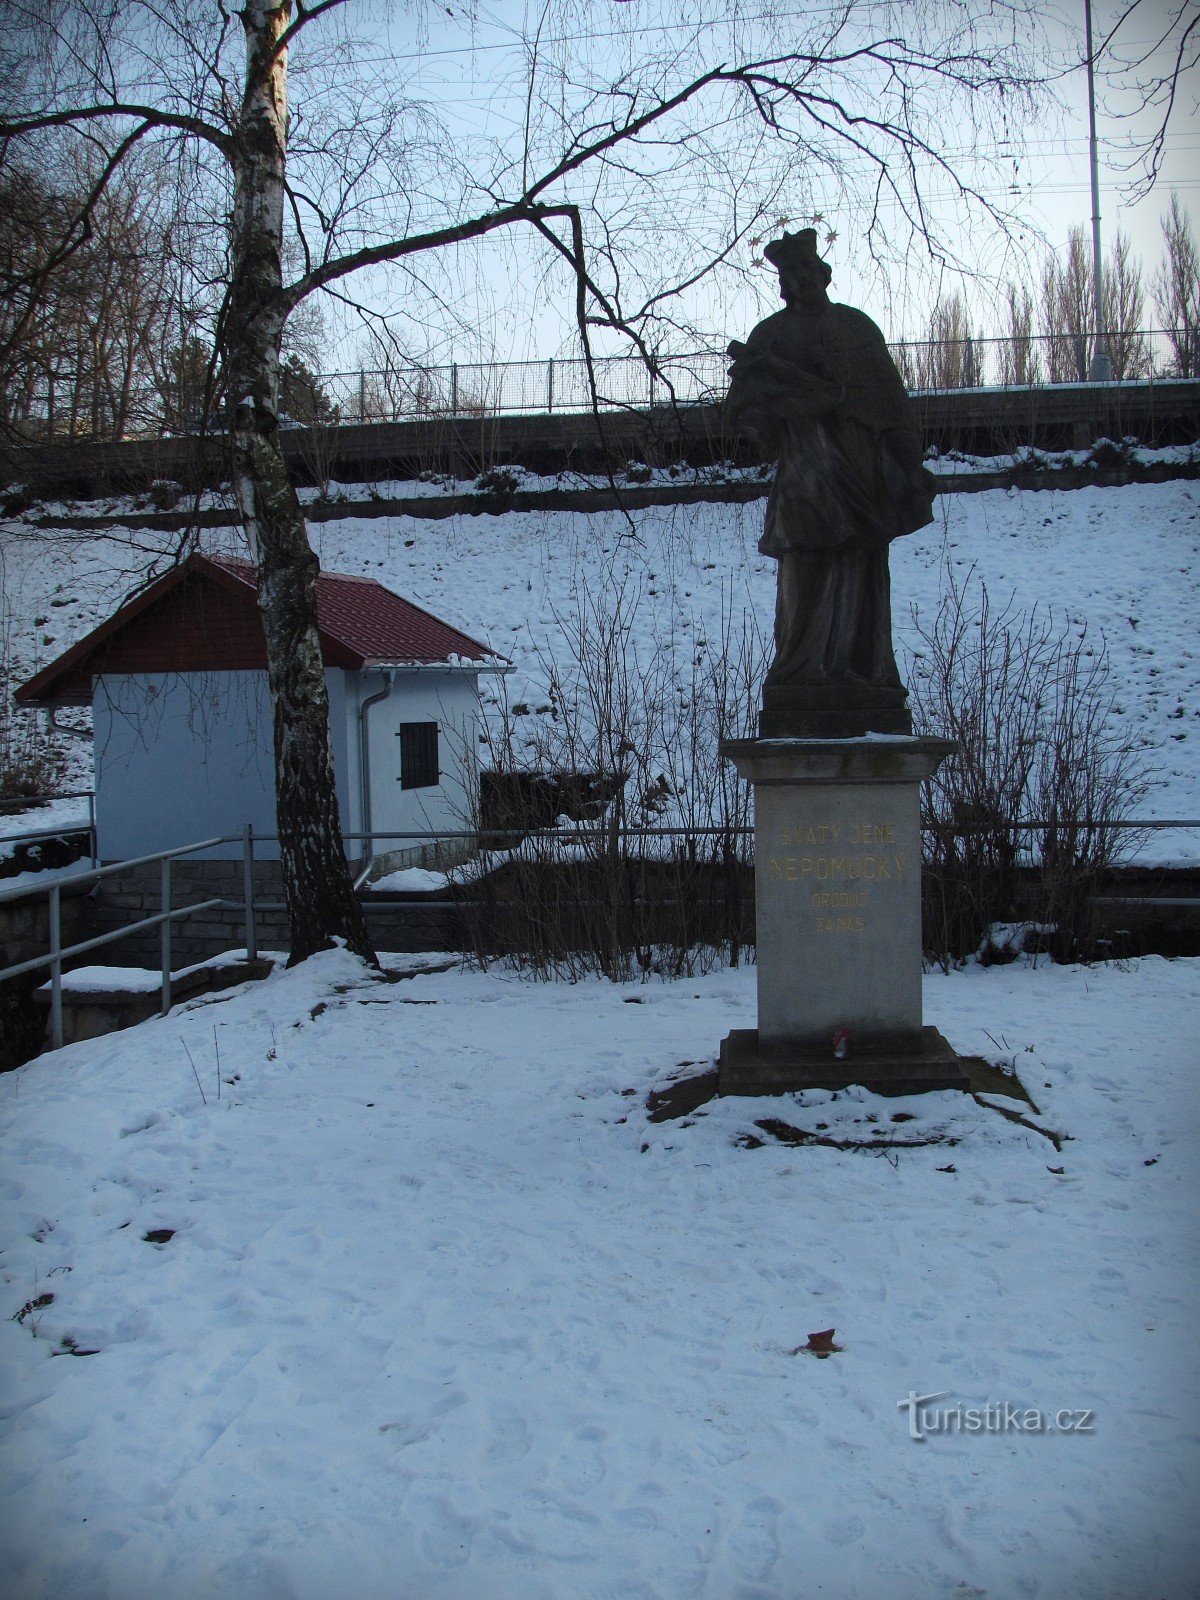 Zlín - statue of St. John of Nepomuk